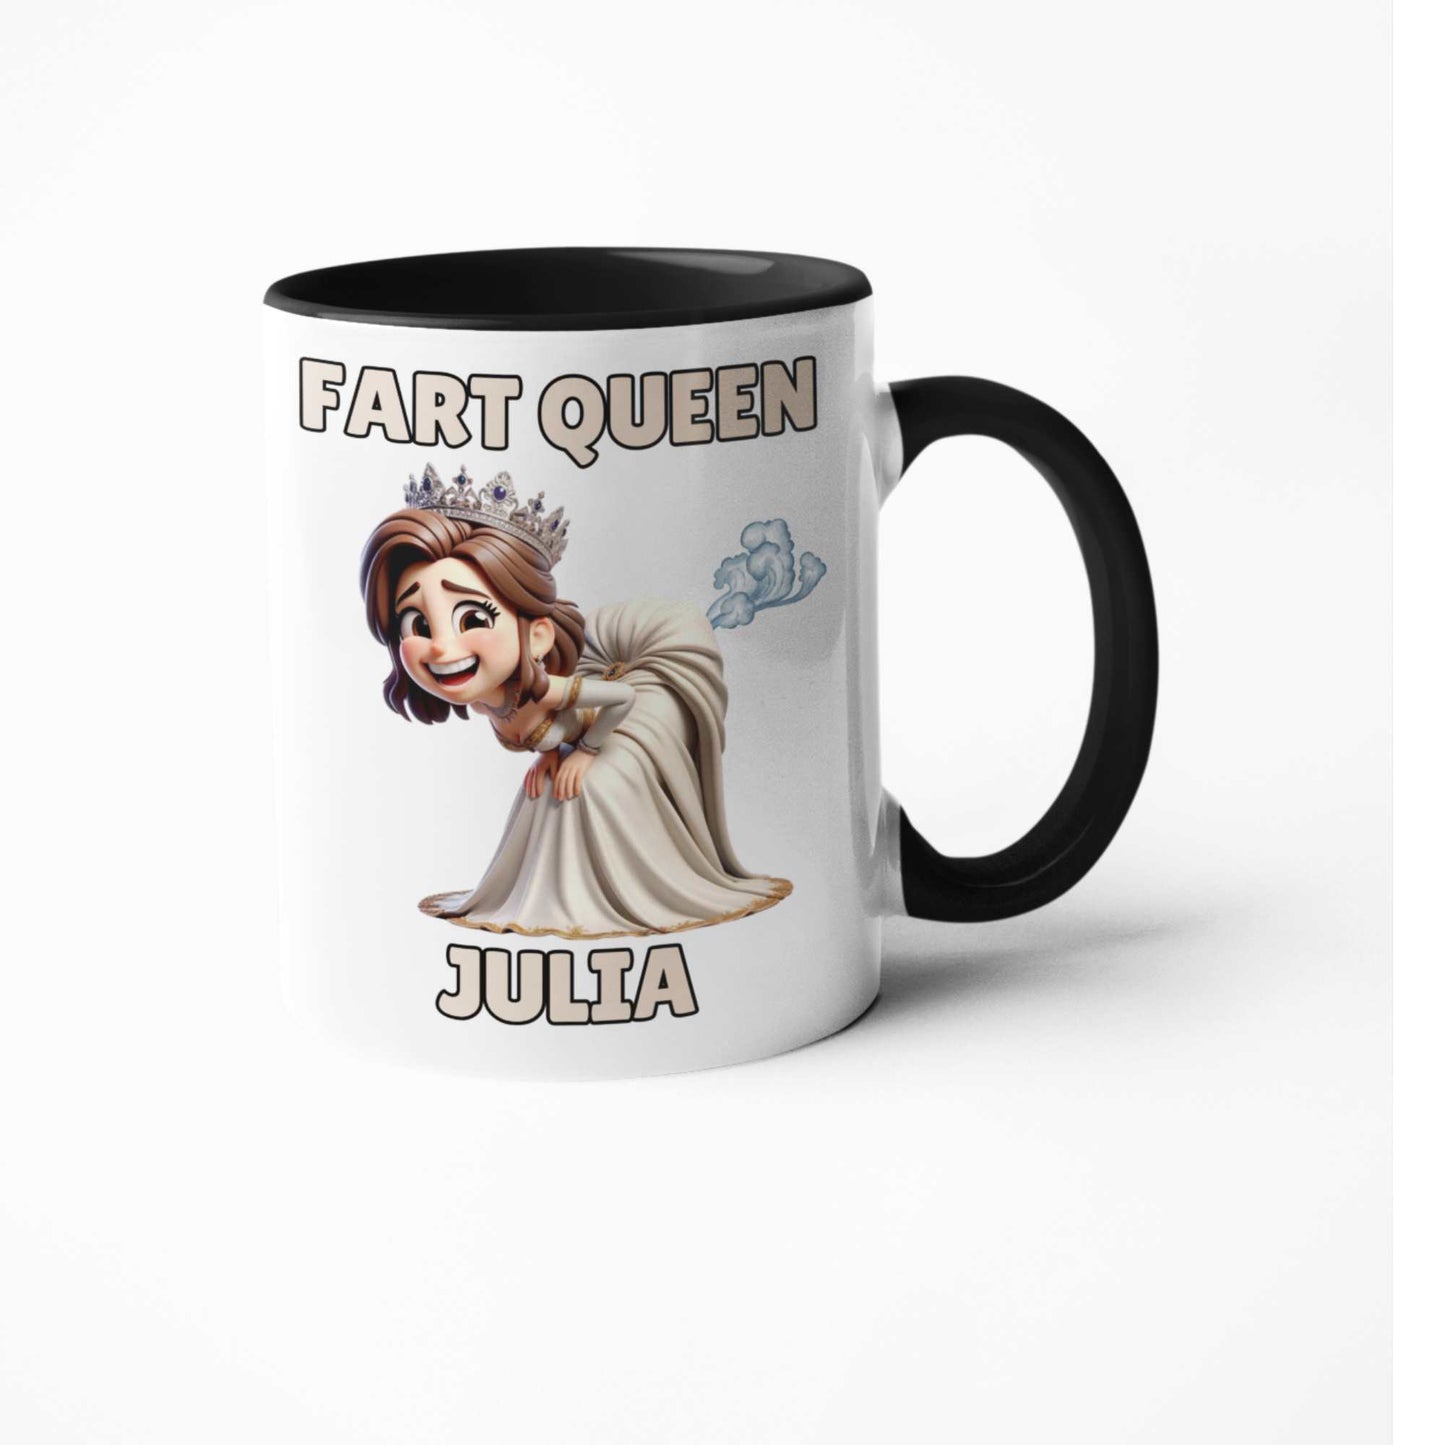 Fart queen personalised coffee mug